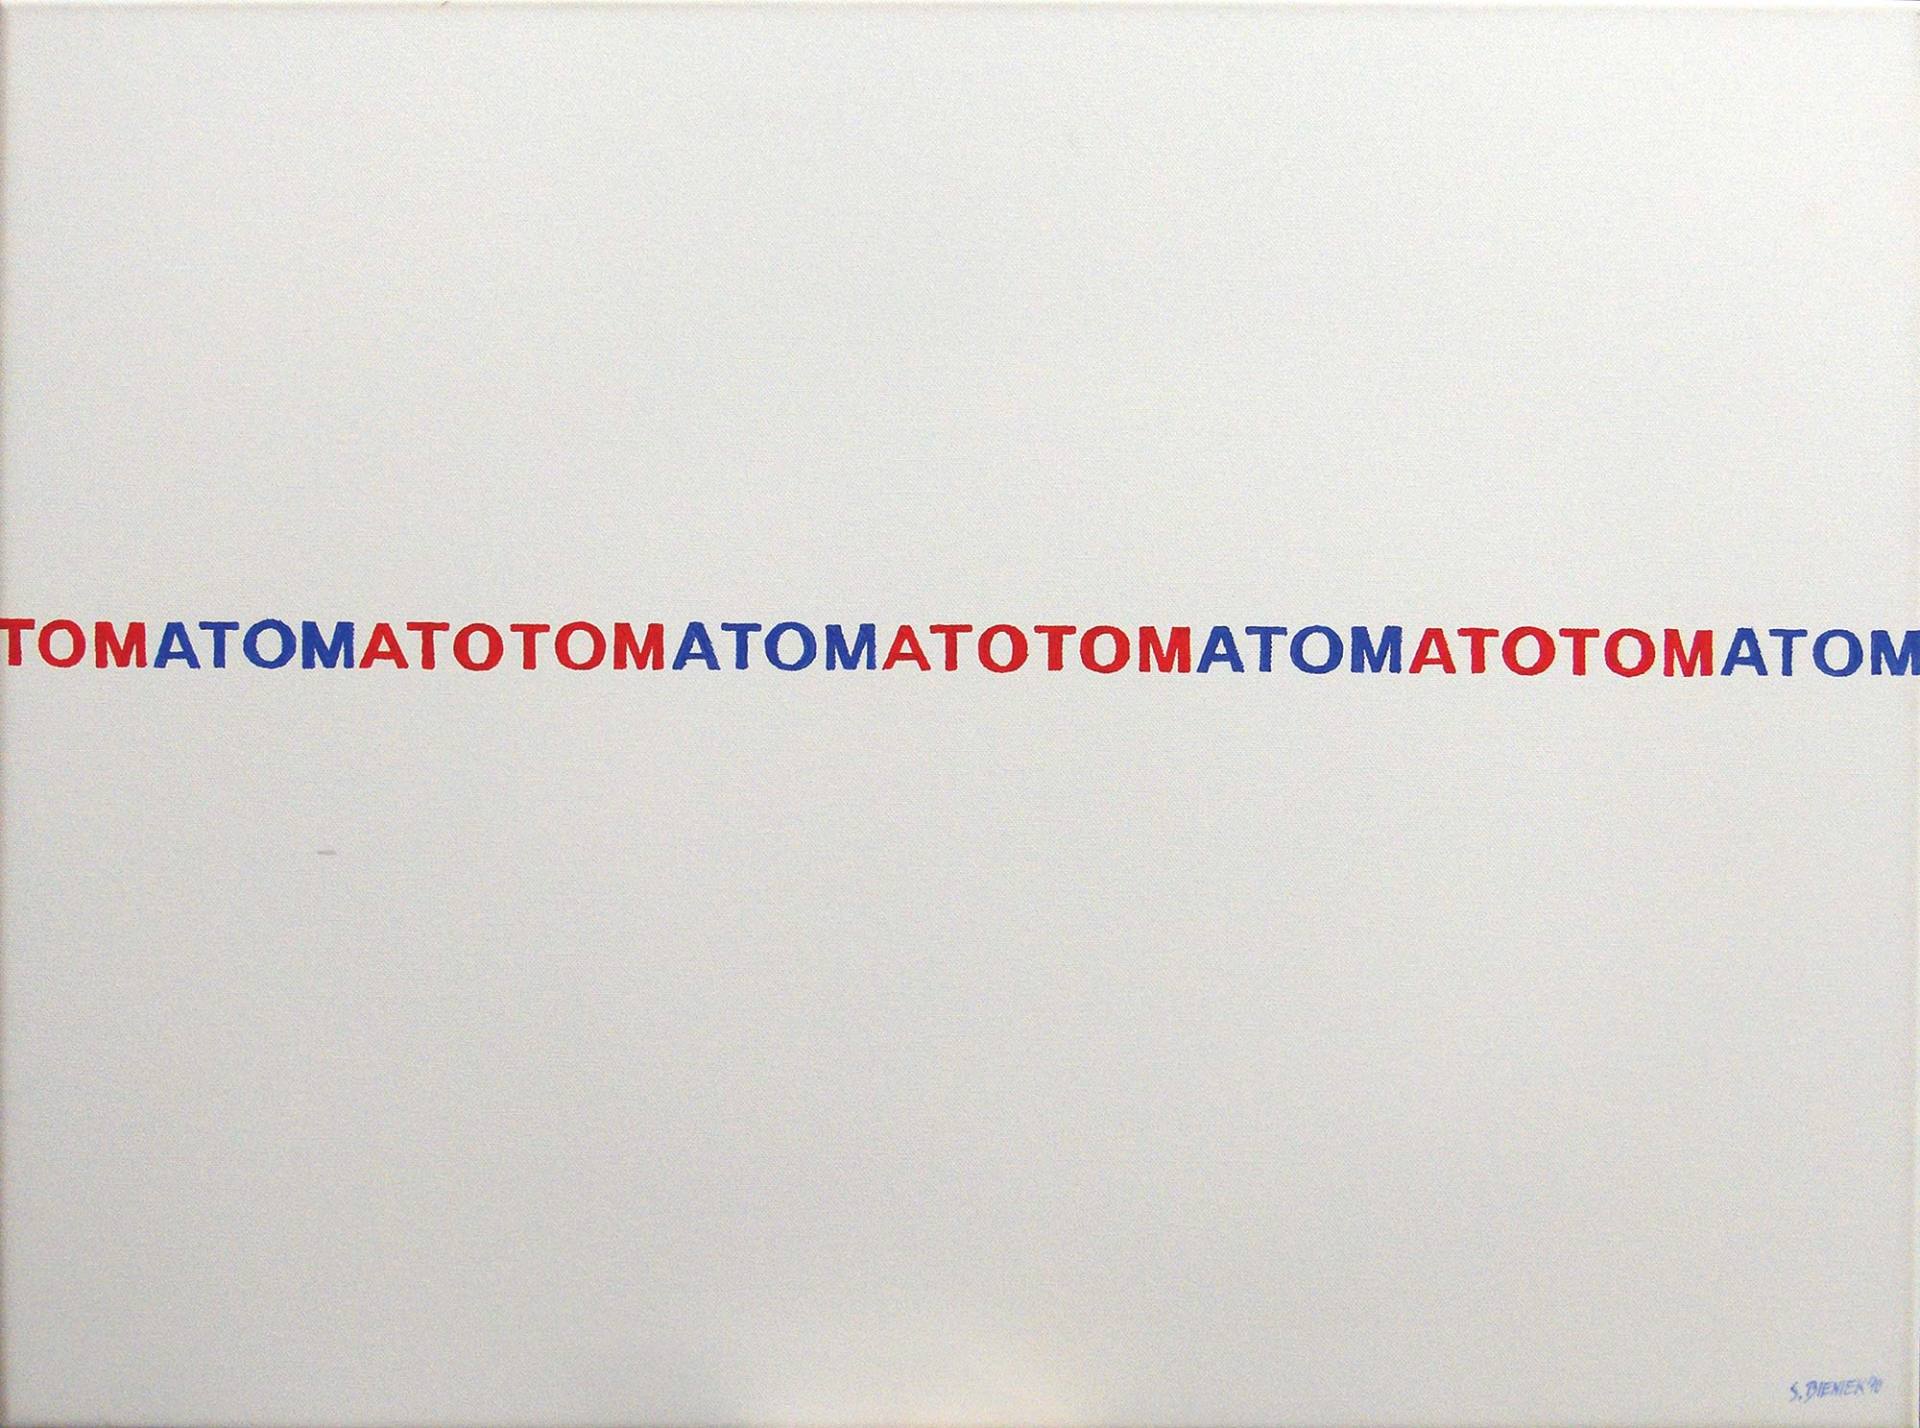 „Tomatomtom“ by Sebastian Bieniek (B1EN1EK), 2010. Oil on canvas. 80 cm. x 60 cm. Word painting from the Bieniek-Text oeuvre. Series of  